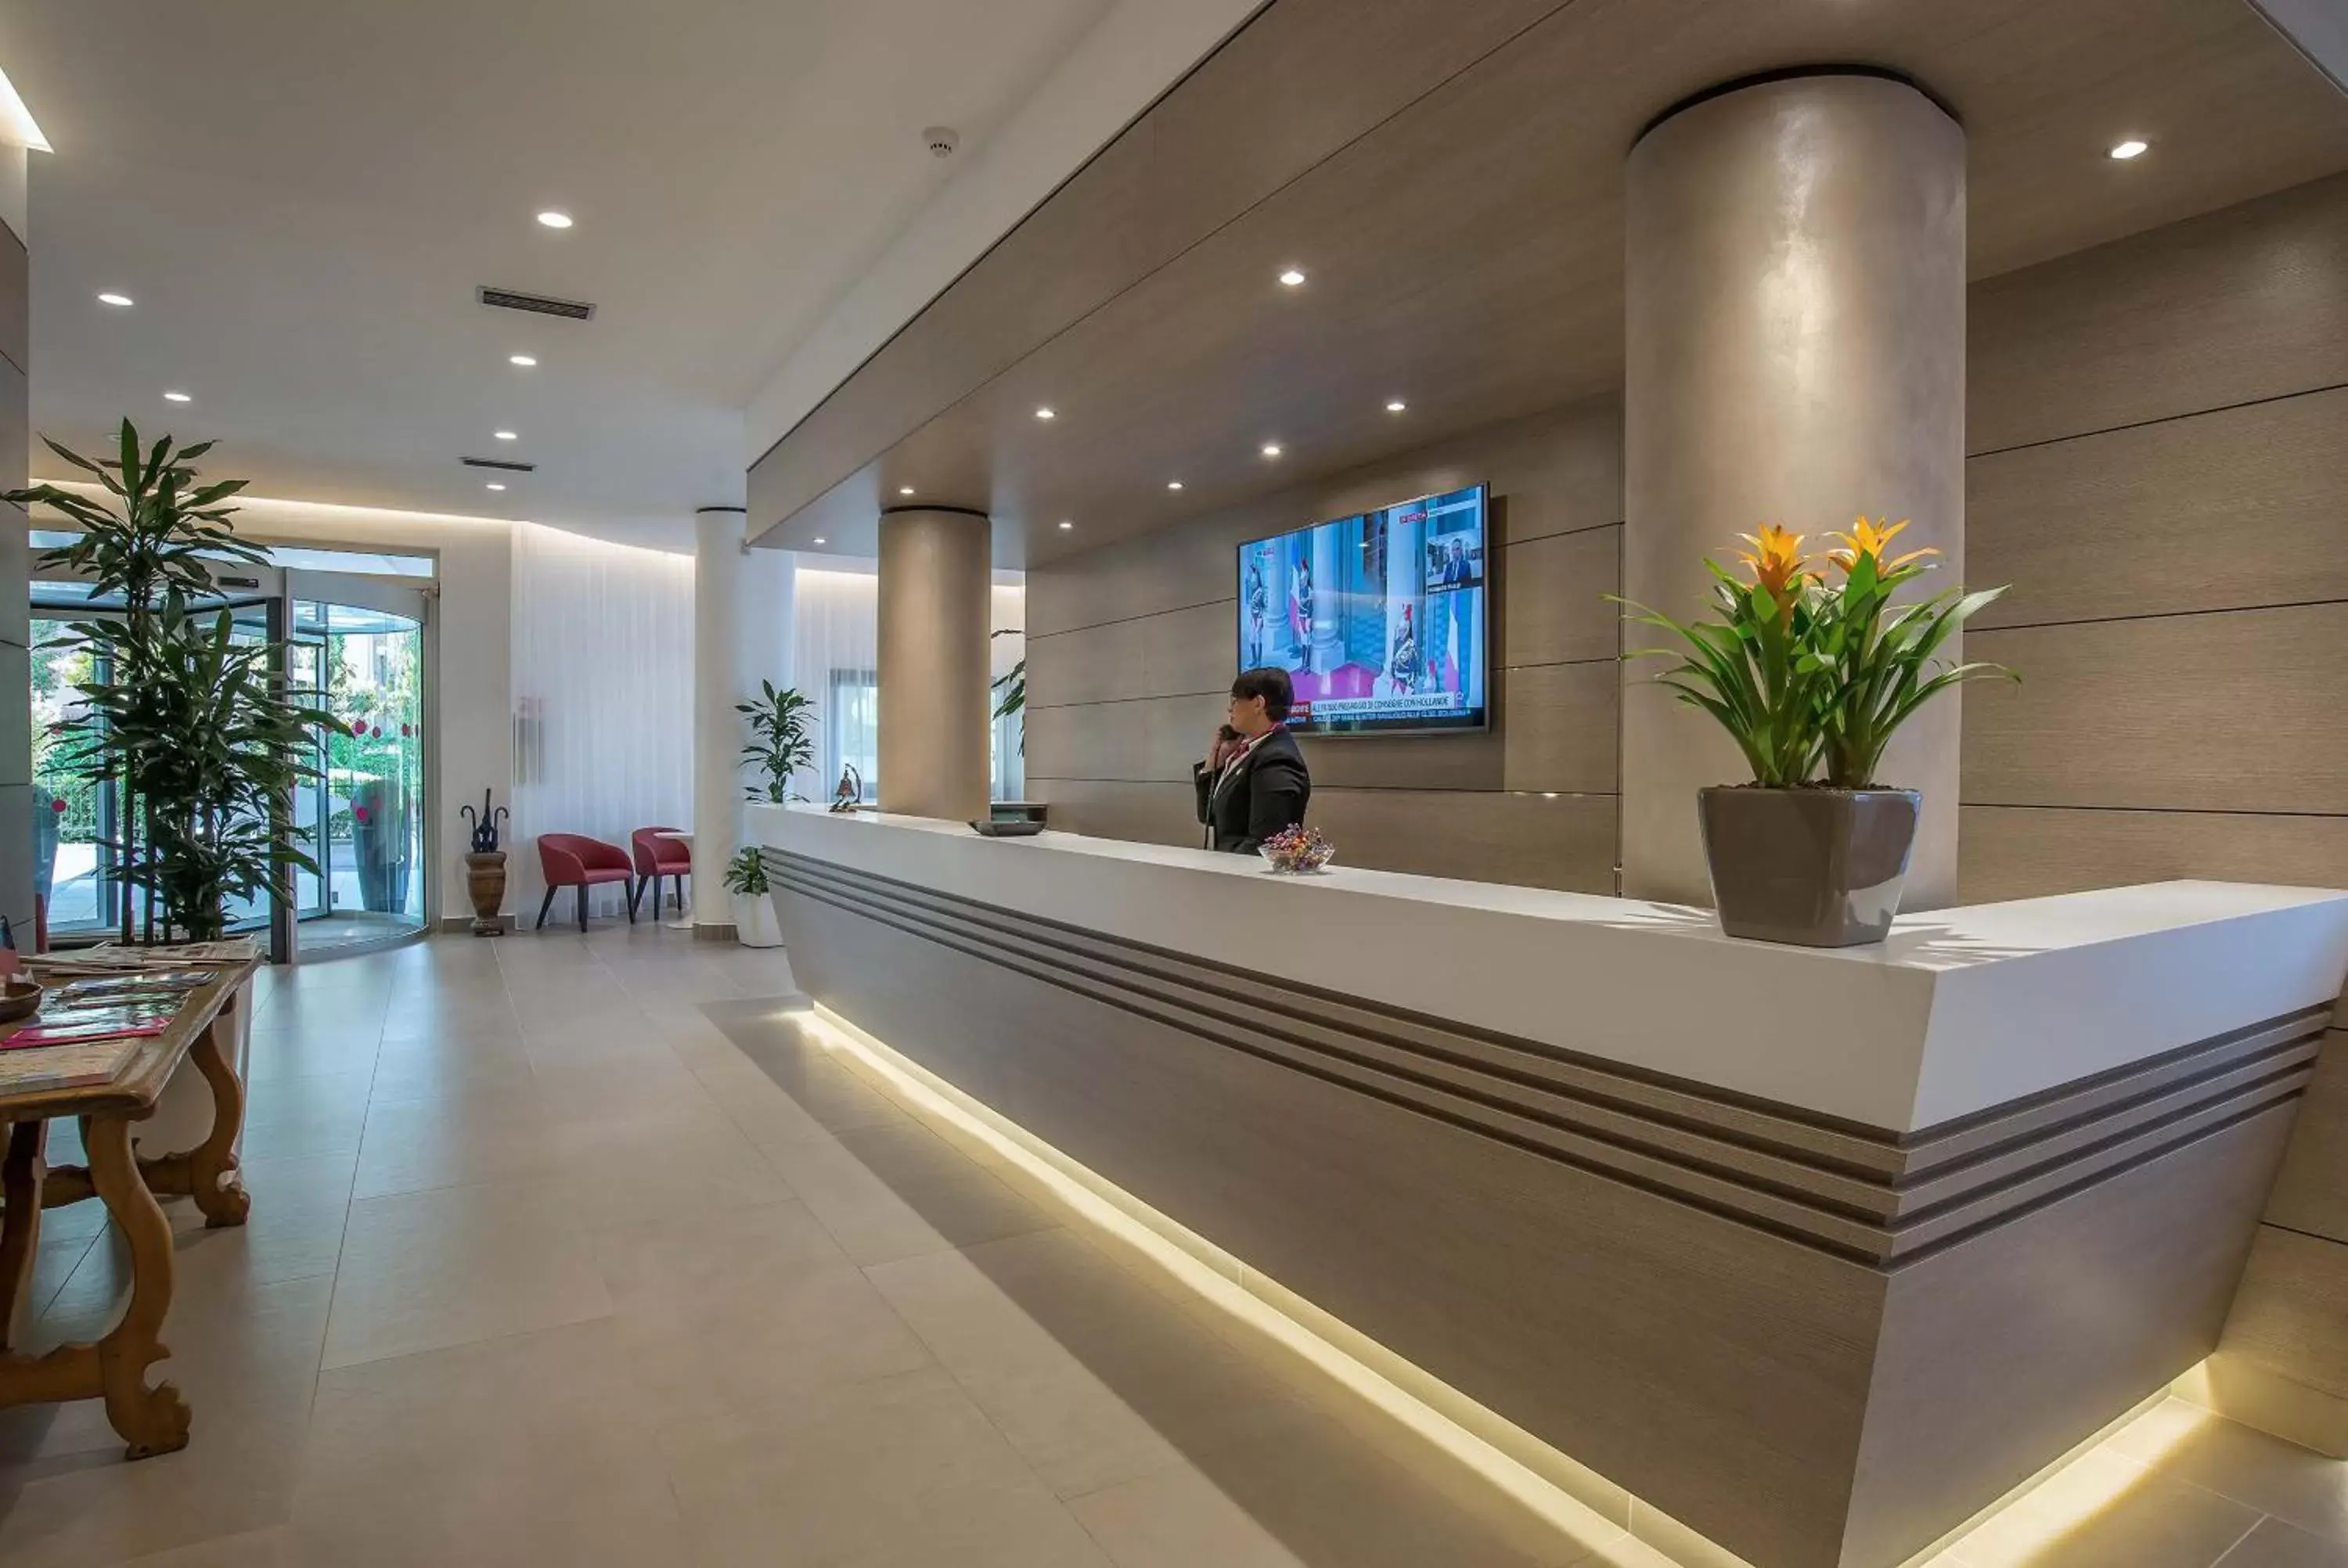 Lobby or reception in Hotel La Giocca